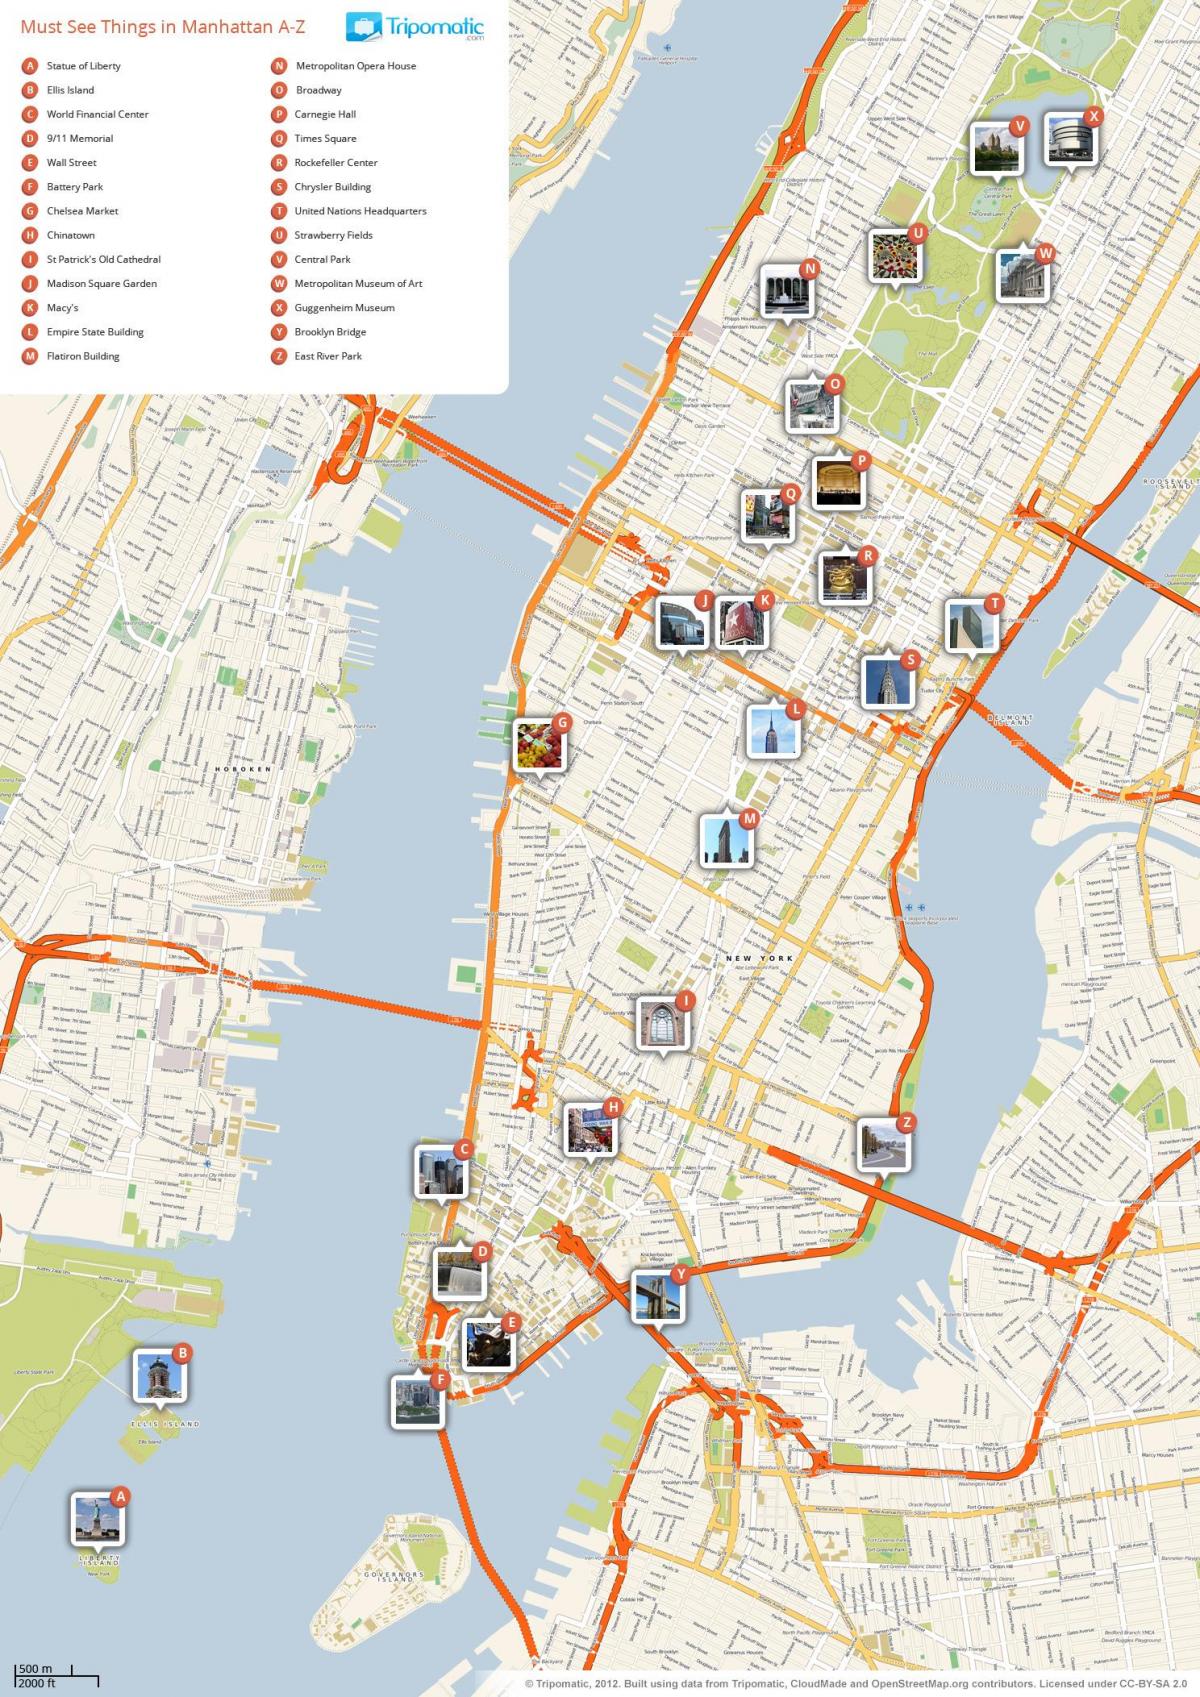 नक्शे के साथ मैनहट्टन के ब्याज के अंक